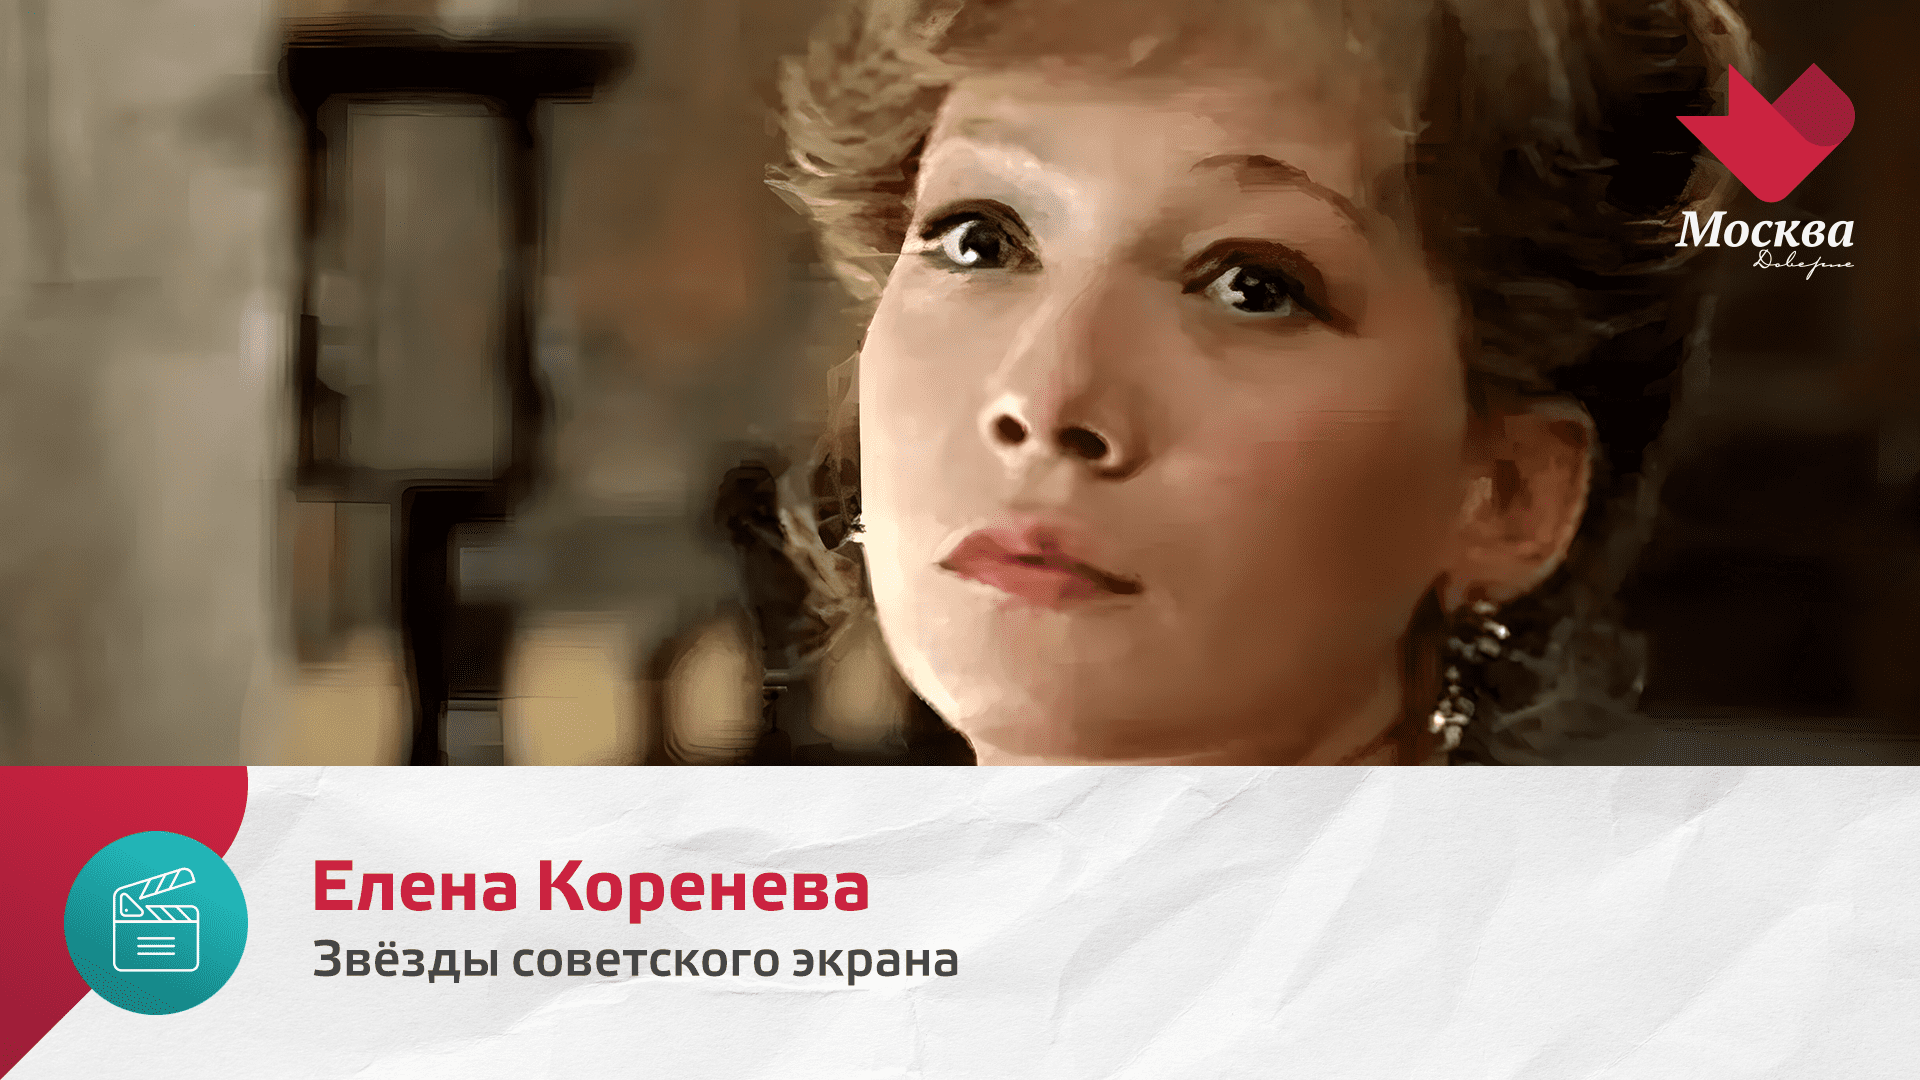 Елена Коренева | Звезды советского экрана